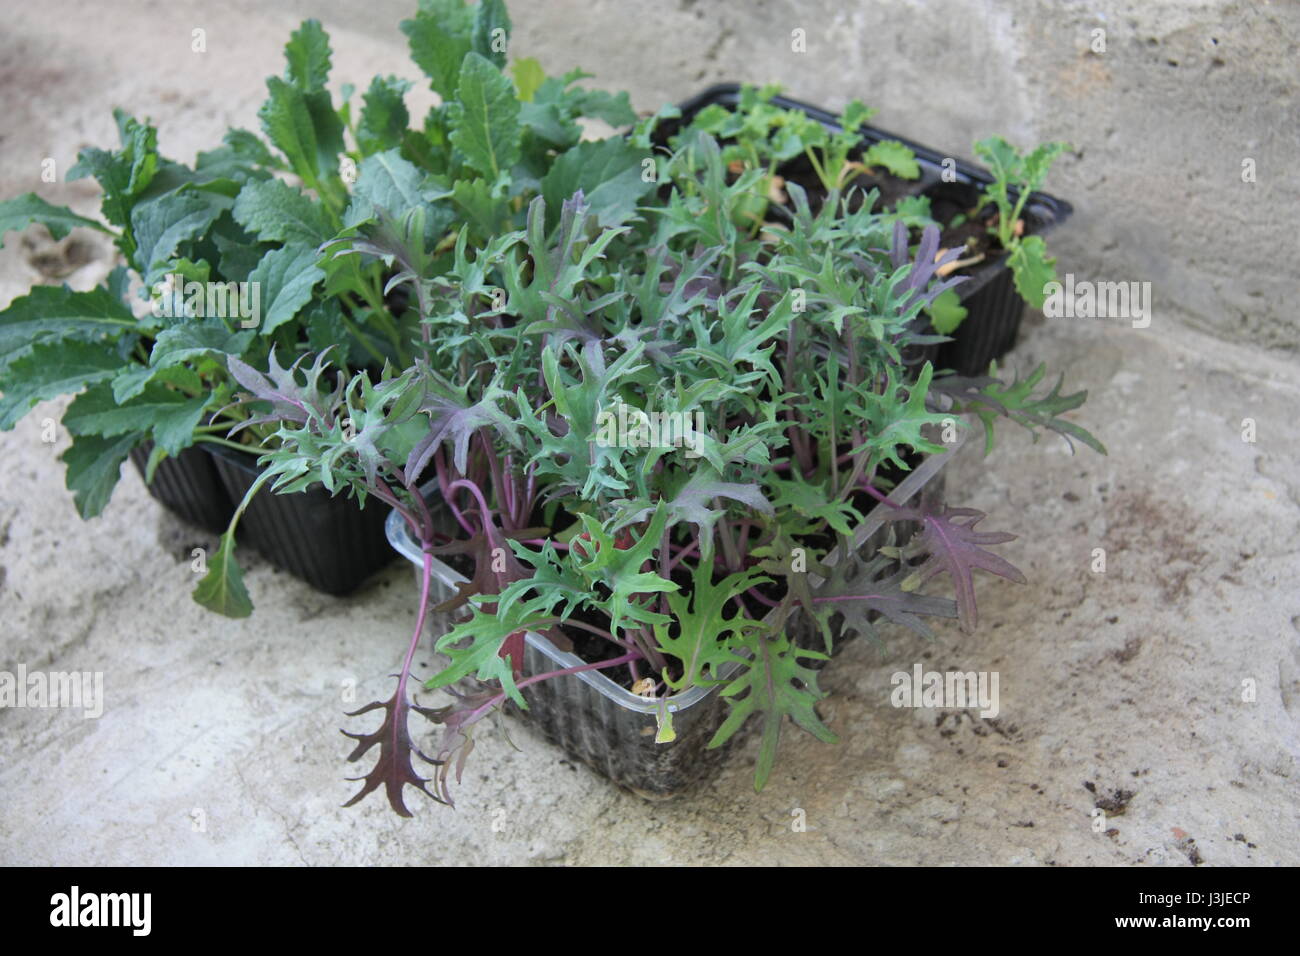 Plántulas de hortalizas listas para la siembra. Red Russian Kale, acinato kale Kale Vates Azul extremo curvado Foto de stock